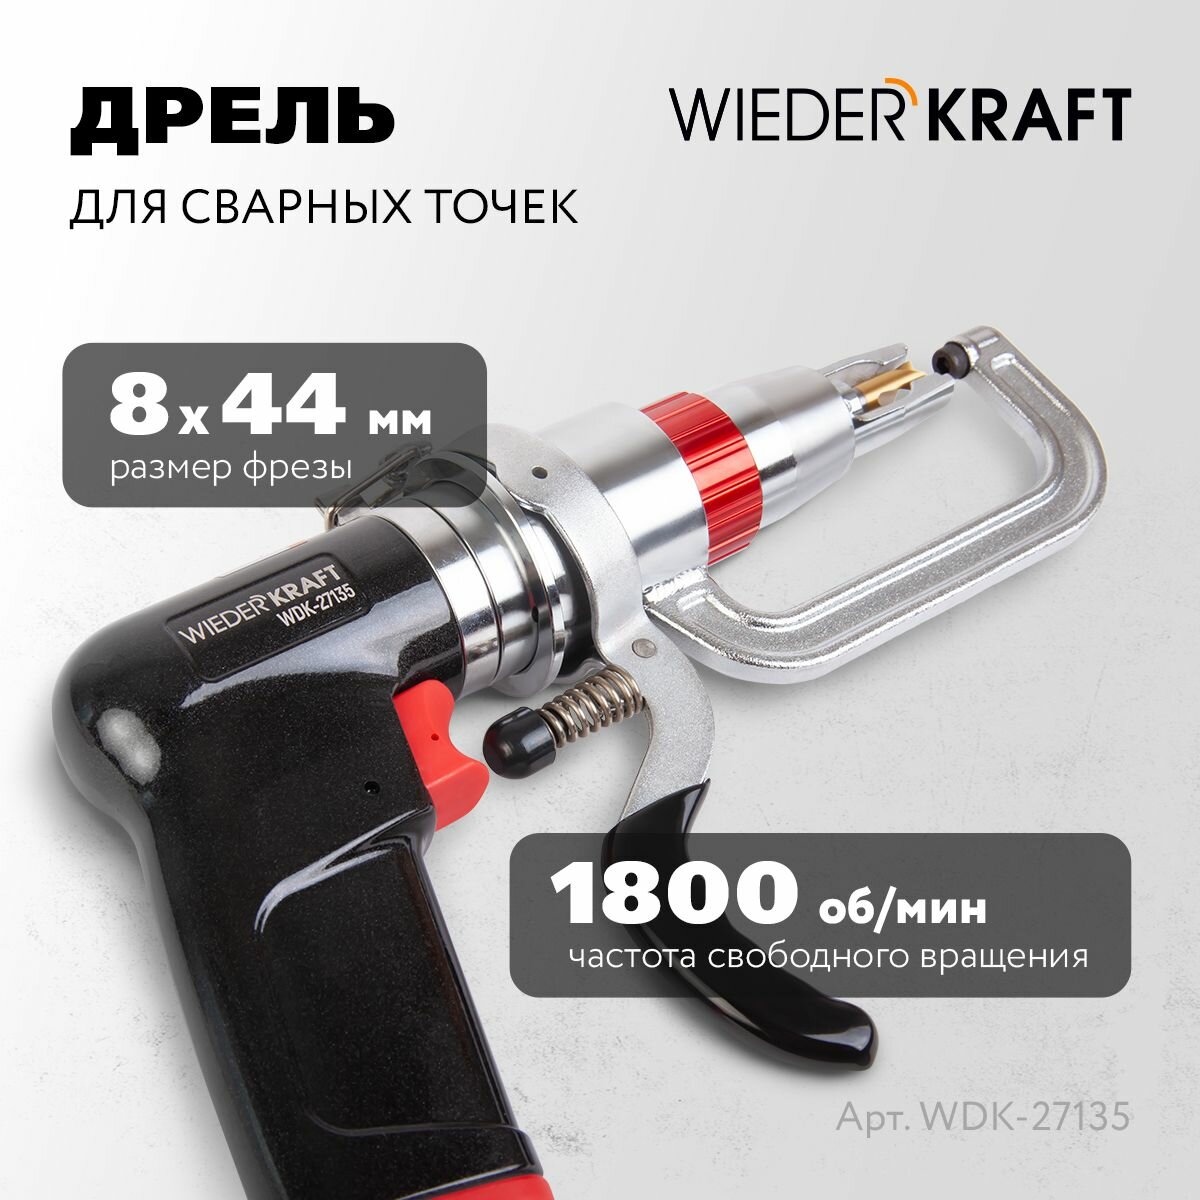 Дрель WIEDERKRAFT для сварных точек 1800 об/мин WDK-27135